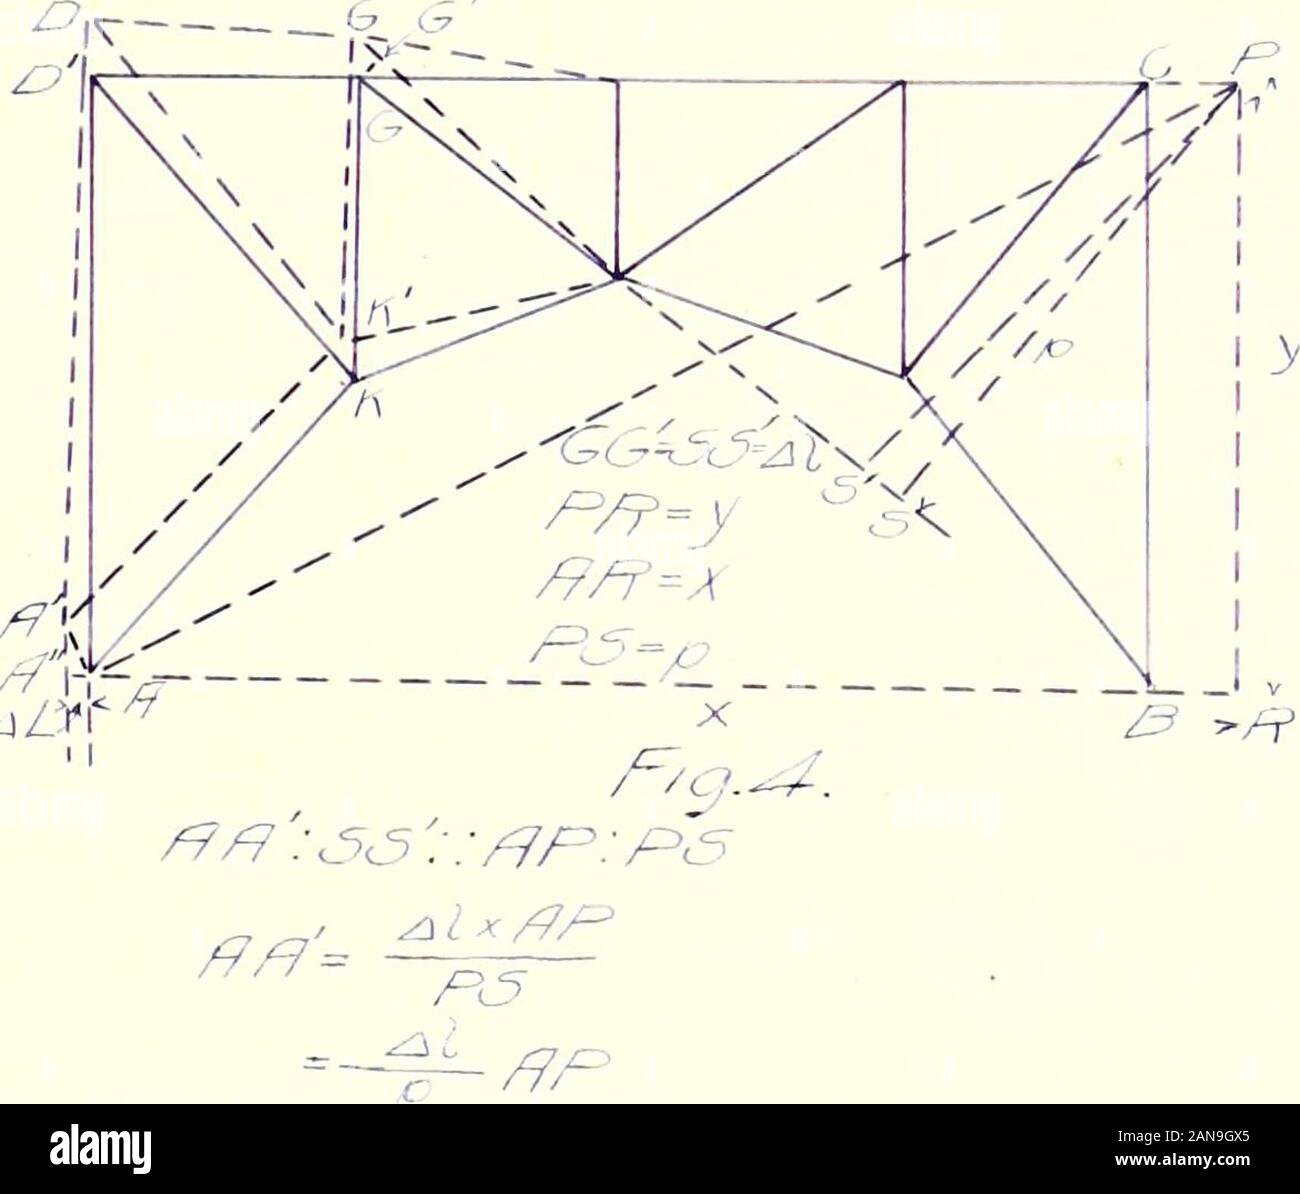 Progettazione di 2-incernierato spandrel controventati arco in acciaio a doppia via ponte ferroviario, 400 ftspan. . ?/7f /r? C5&GT;^7//c-^r 7r-/c7/7c^/c^ /7/^h Zr7cy/7/^rf. Z -9- la staffa diagonale:. //7 c5//77//c7A //vV?^7^/£lS/f/f/^r///c//^/=/^% ^^^Fr? Yx/7/7 /?/ costola membro: z; f- - - // /; / N / / / rM t^ ^^^ ^^-^ / / V , /77/^/l,? / ^ / 1 y C^/f-i J ^ // 1 /^/P^A /J  G3=^ ^z^Z /7/, v/e ottenere ^^y qualsiasi reazione a riscontri avente andvertical orizzontale componenti,// e /^, produrrà una sollecitazione,/, inany pezzo che v/ill dare, mediante il metodo dei momenti -11- sostituendo questo valore di ^ in /fcv/^/jW Foto Stock